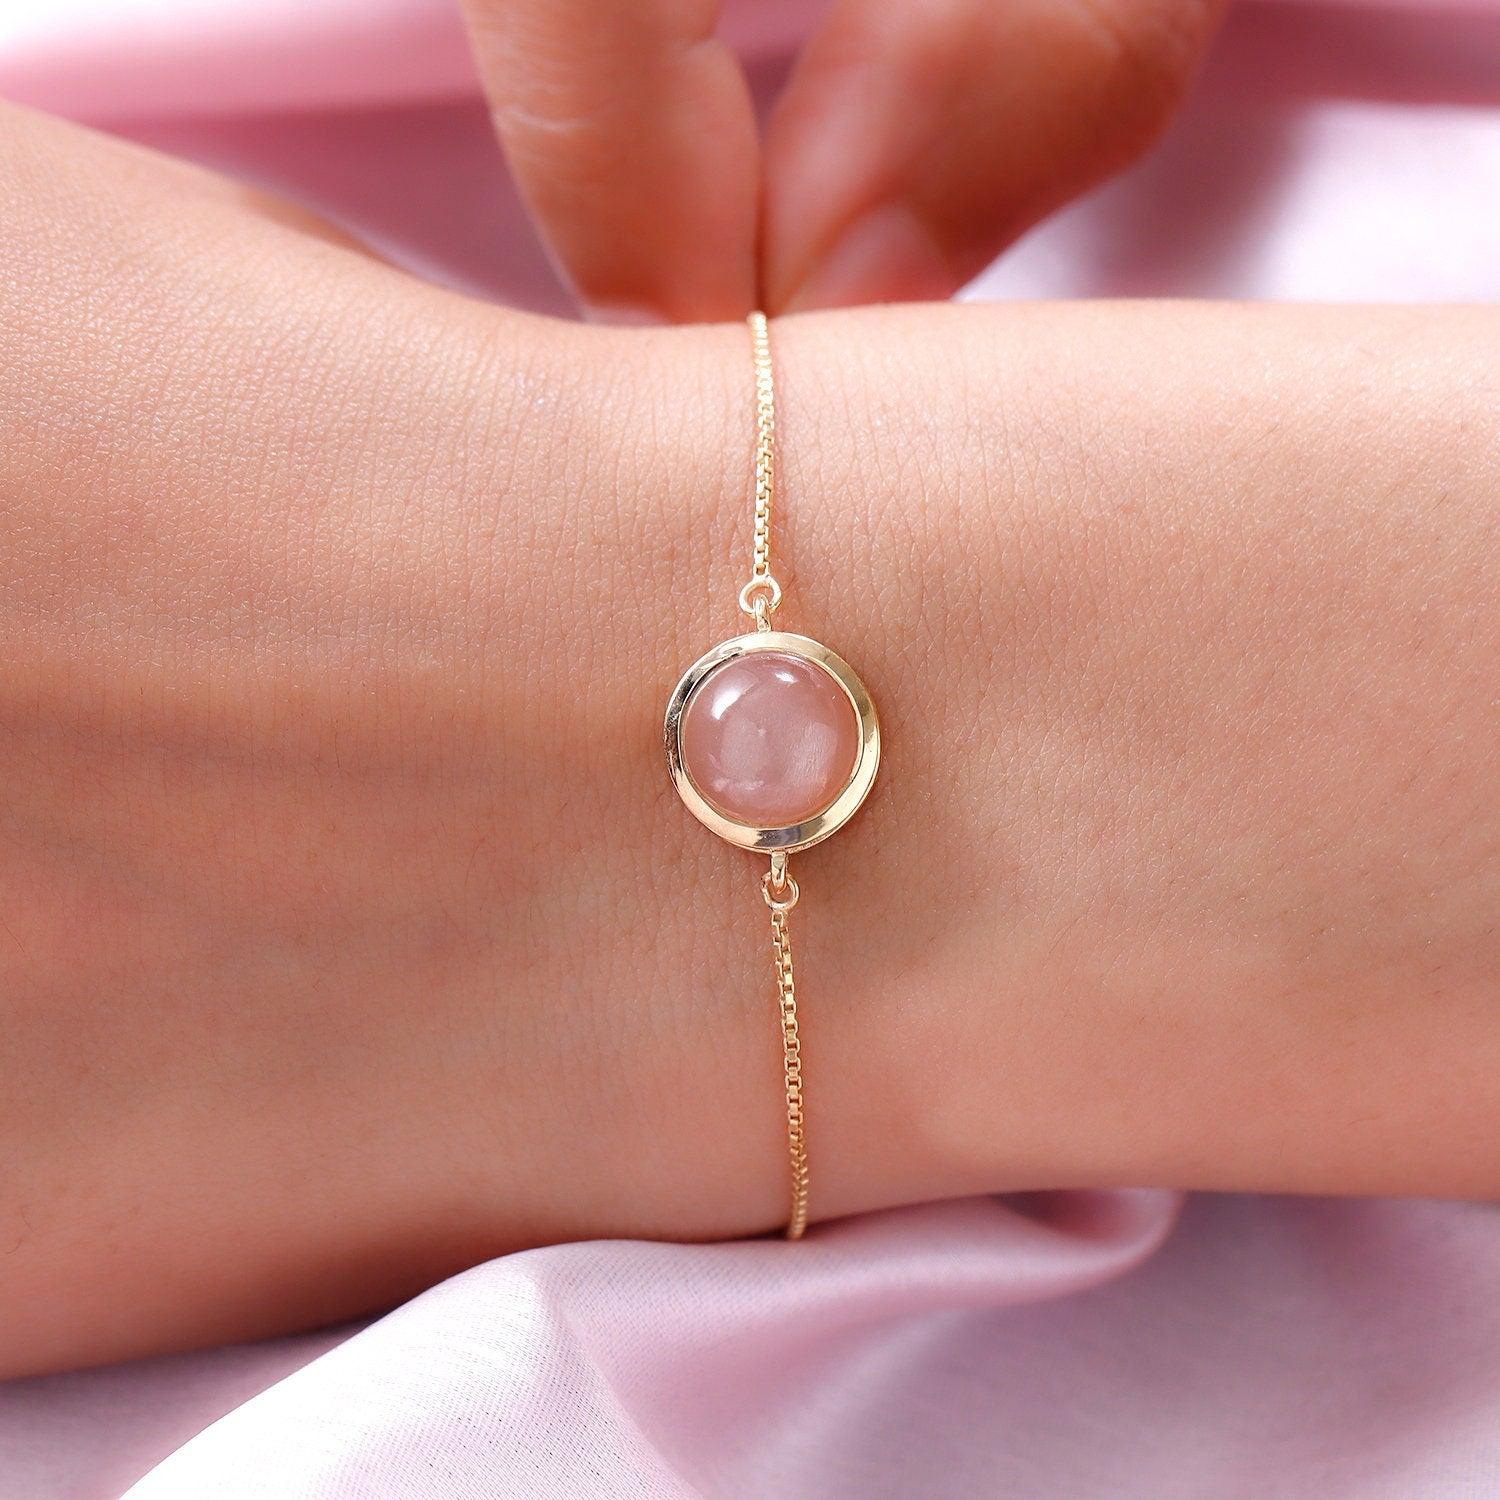 Peach Moonstone Bracelet | Sacral Chakra Bracelet | 925 Sterling Silver Bracelet | Bracelet for Women | Gift for her - Inspiring Jewellery